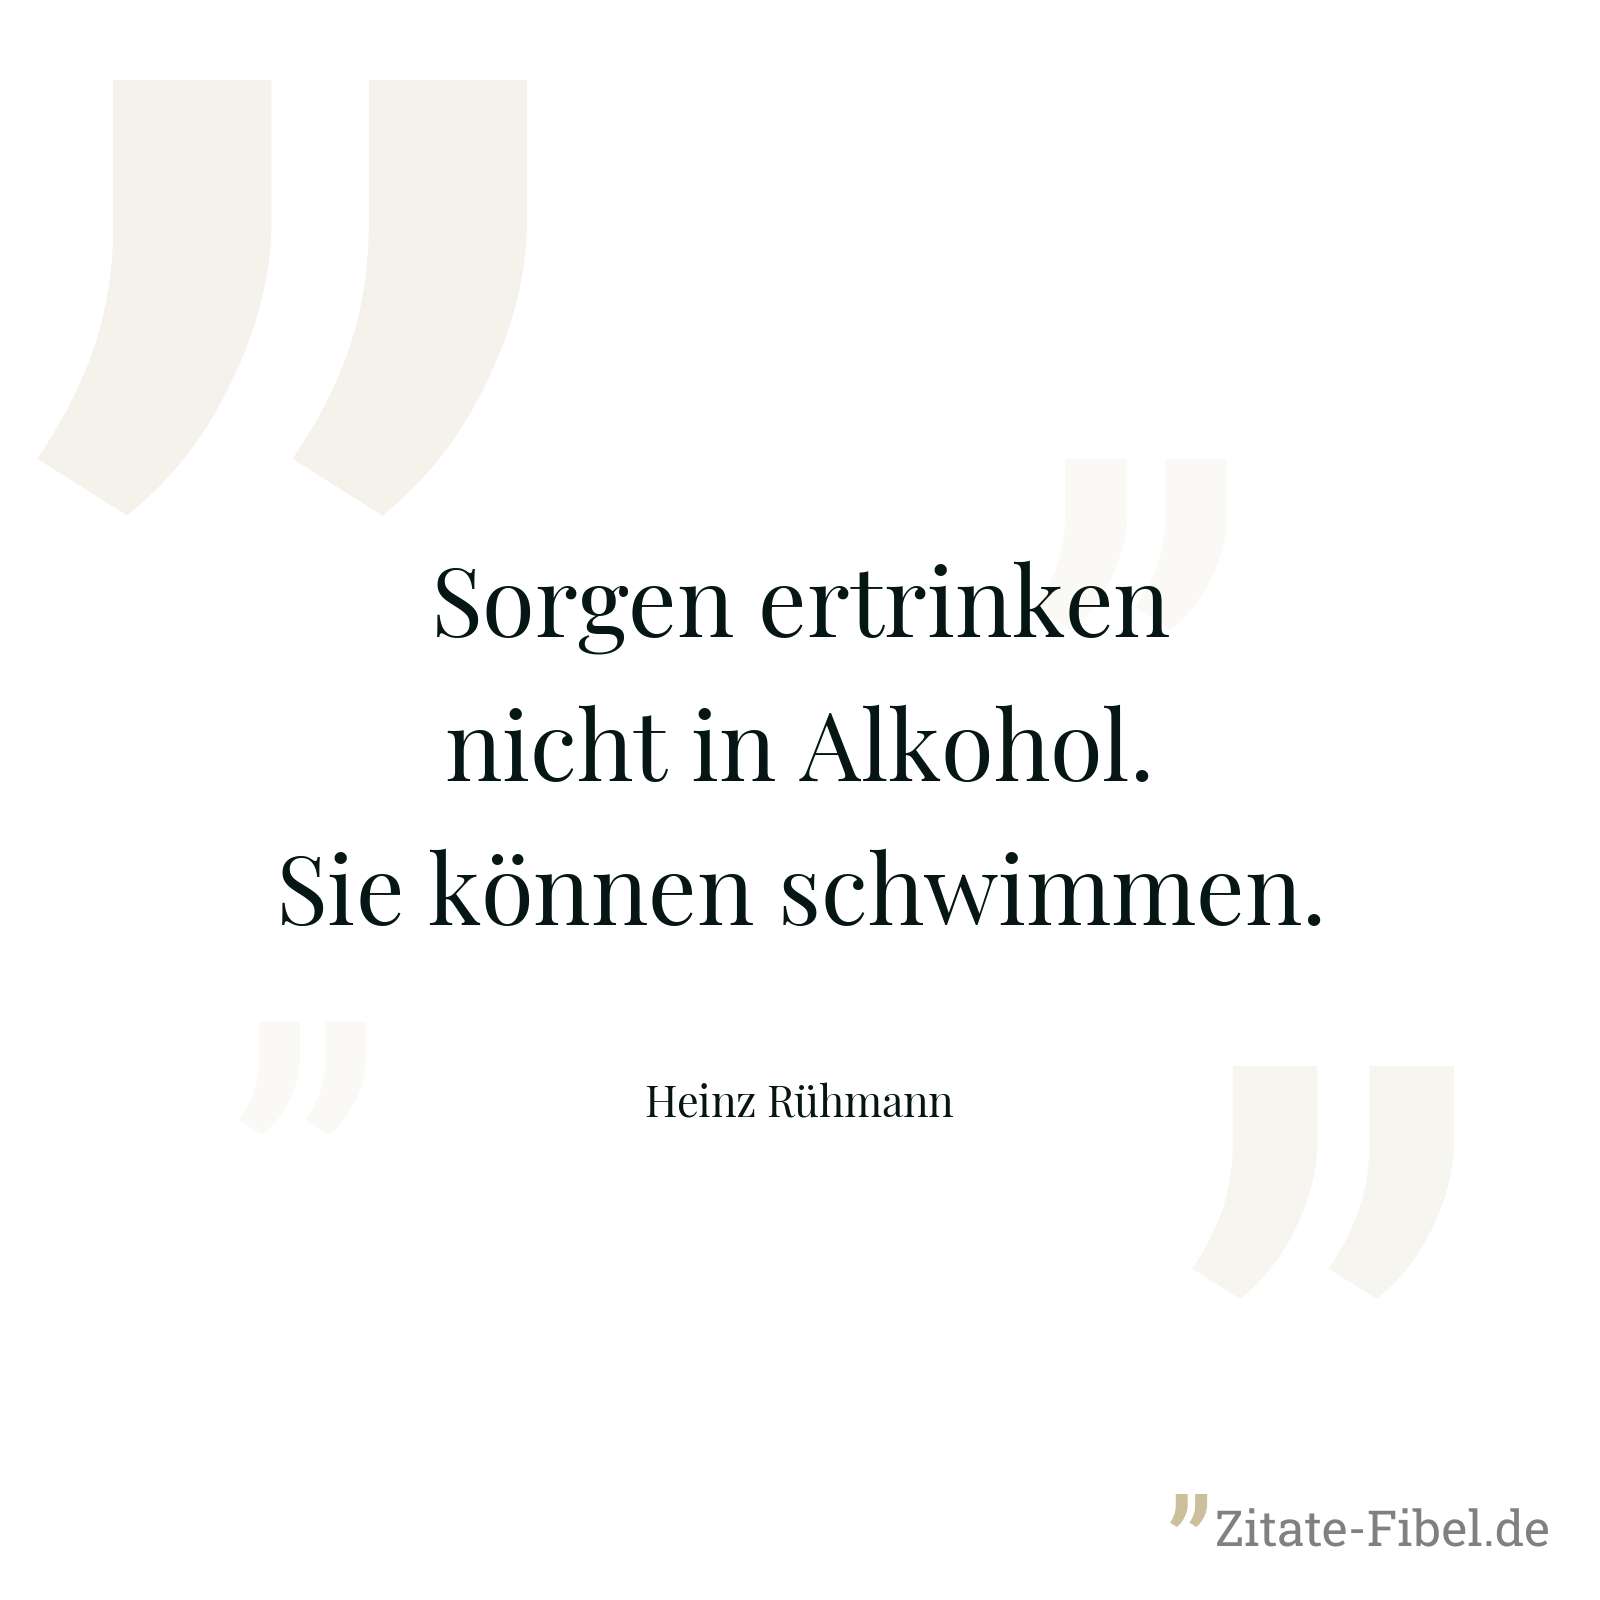 Sorgen ertrinken nicht in Alkohol. Sie können schwimmen. - Heinz Rühmann